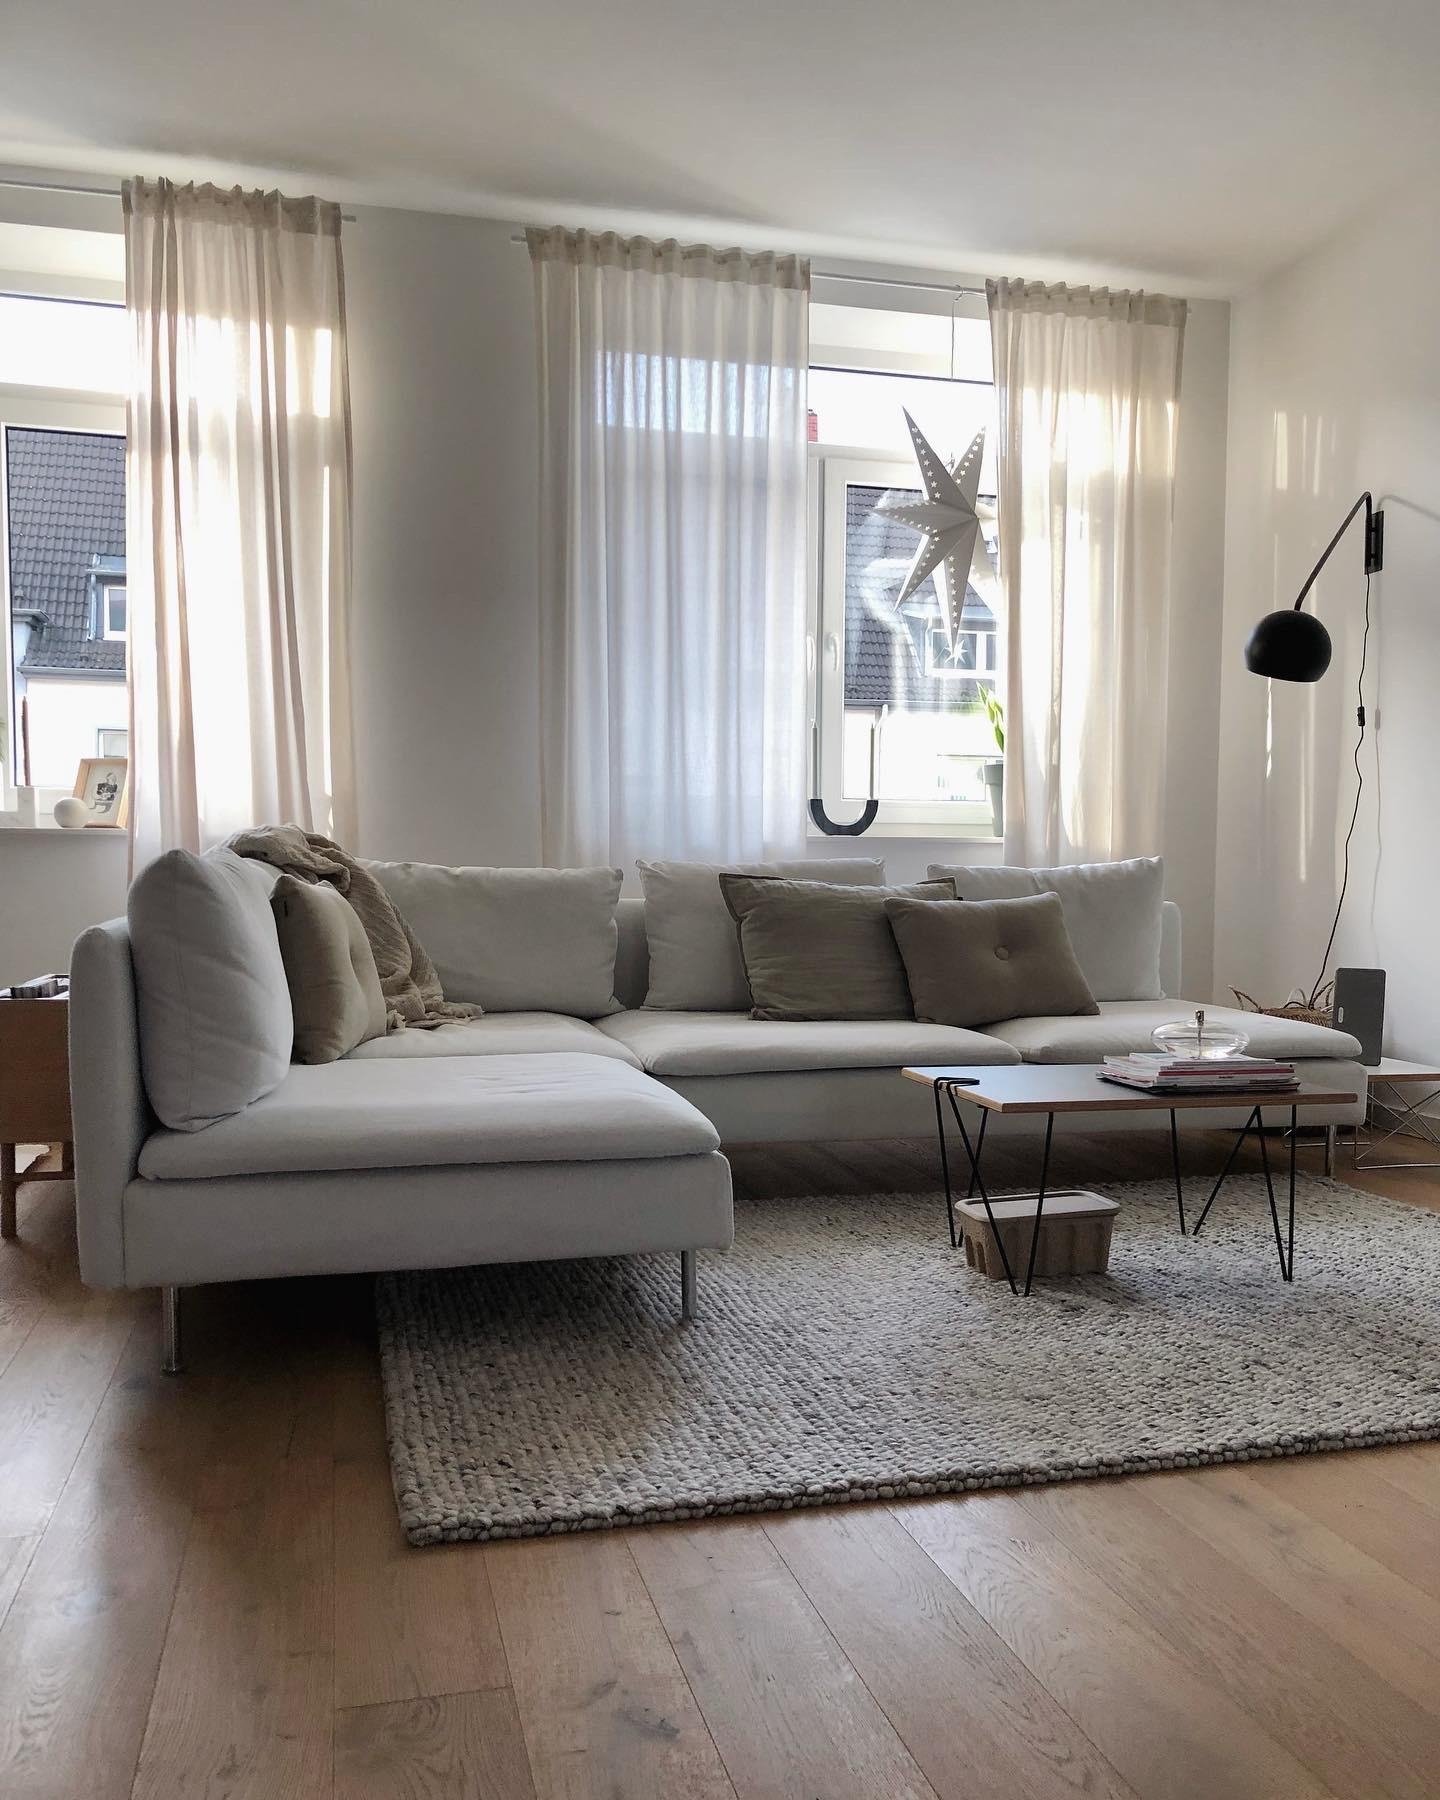 #couch #couchstyle #wohnzimmer #livingroom #fensterdeko #interior #weihnachten #adventsdeko #weihnachtsdeko #skandi